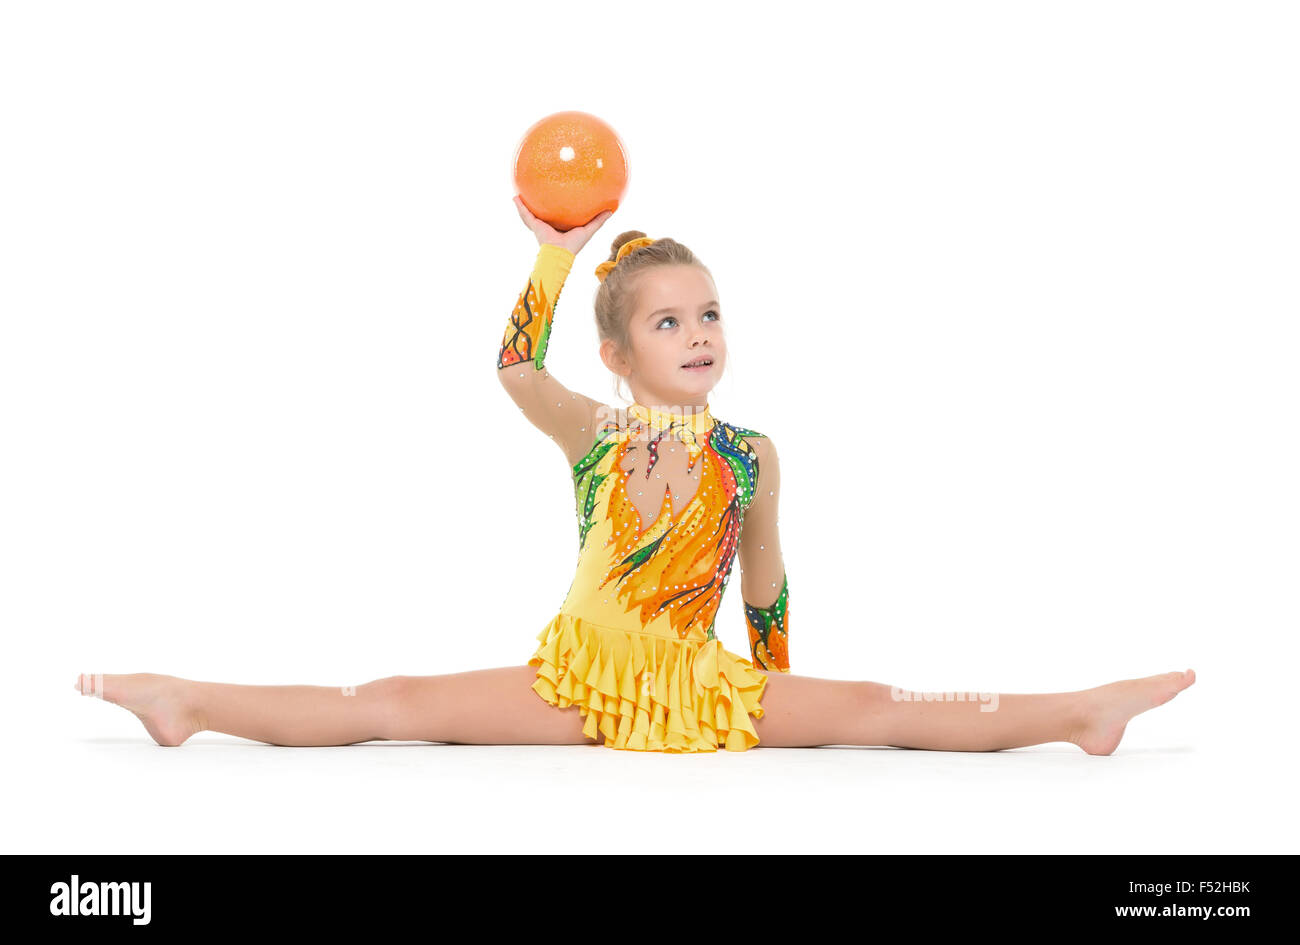 Gymnaste peu pratiquant avec un ballon, sur fond blanc Banque D'Images